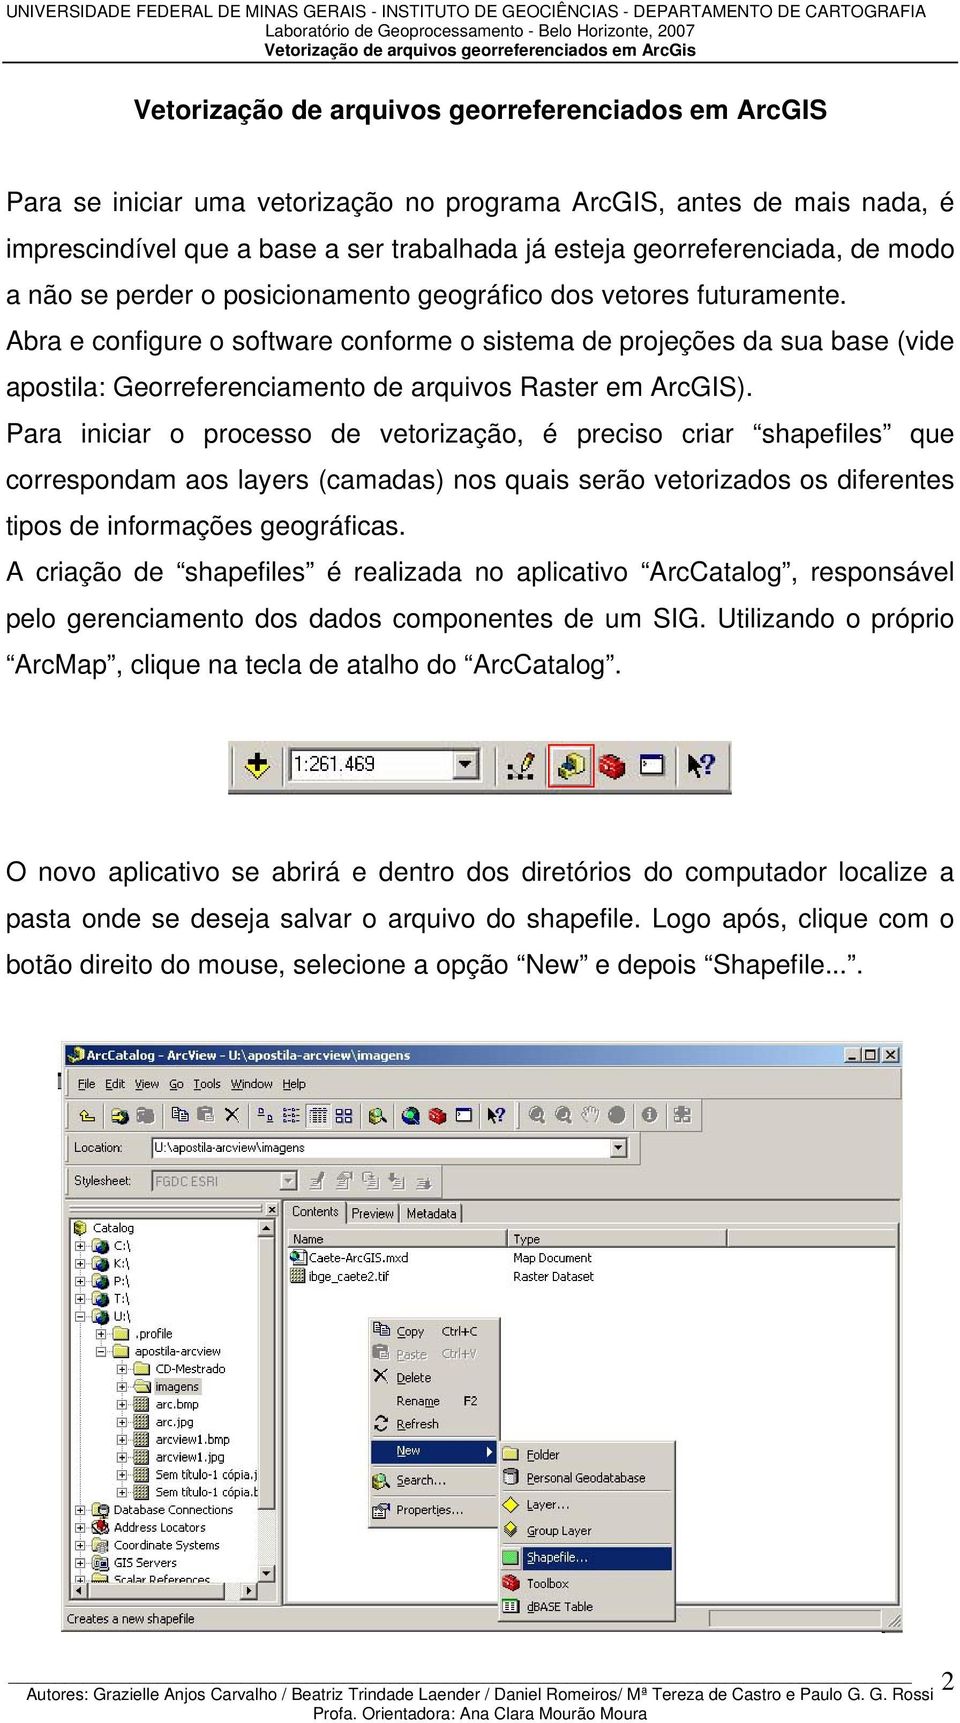 Abra e configure o software conforme o sistema de projeções da sua base (vide apostila: Georreferenciamento de arquivos Raster em ArcGIS).